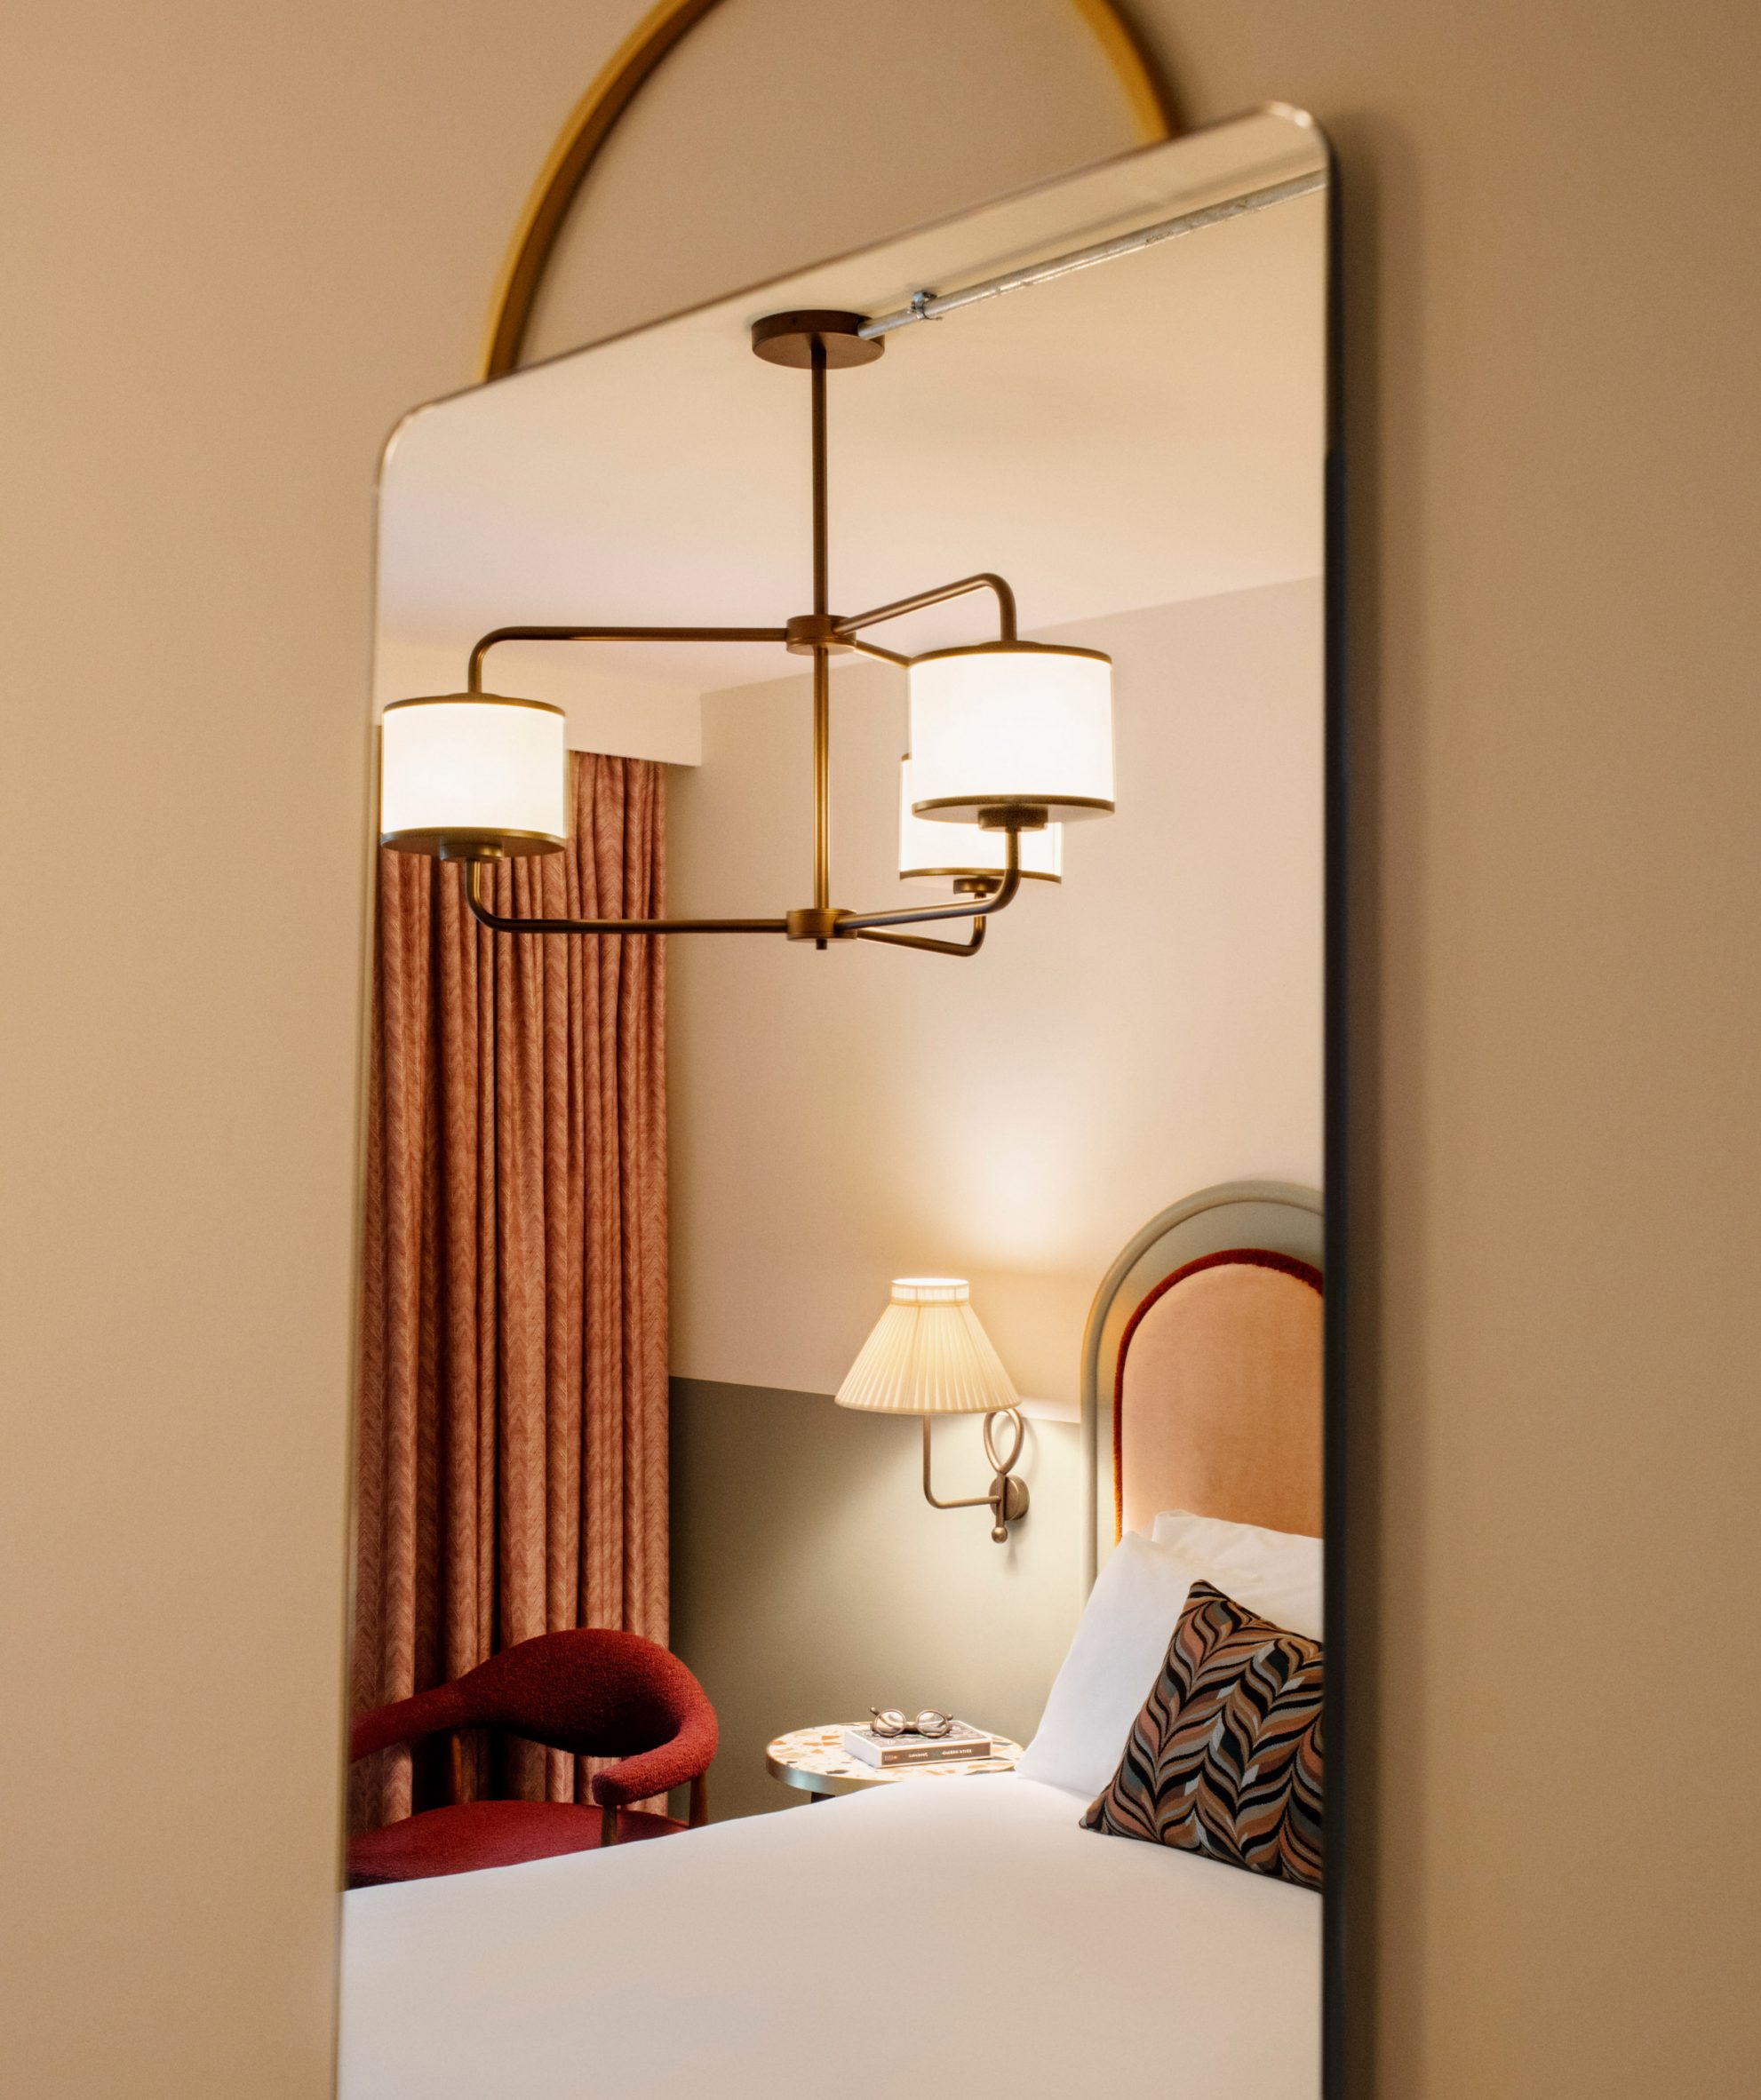 Hotel bed as seen through a mirror